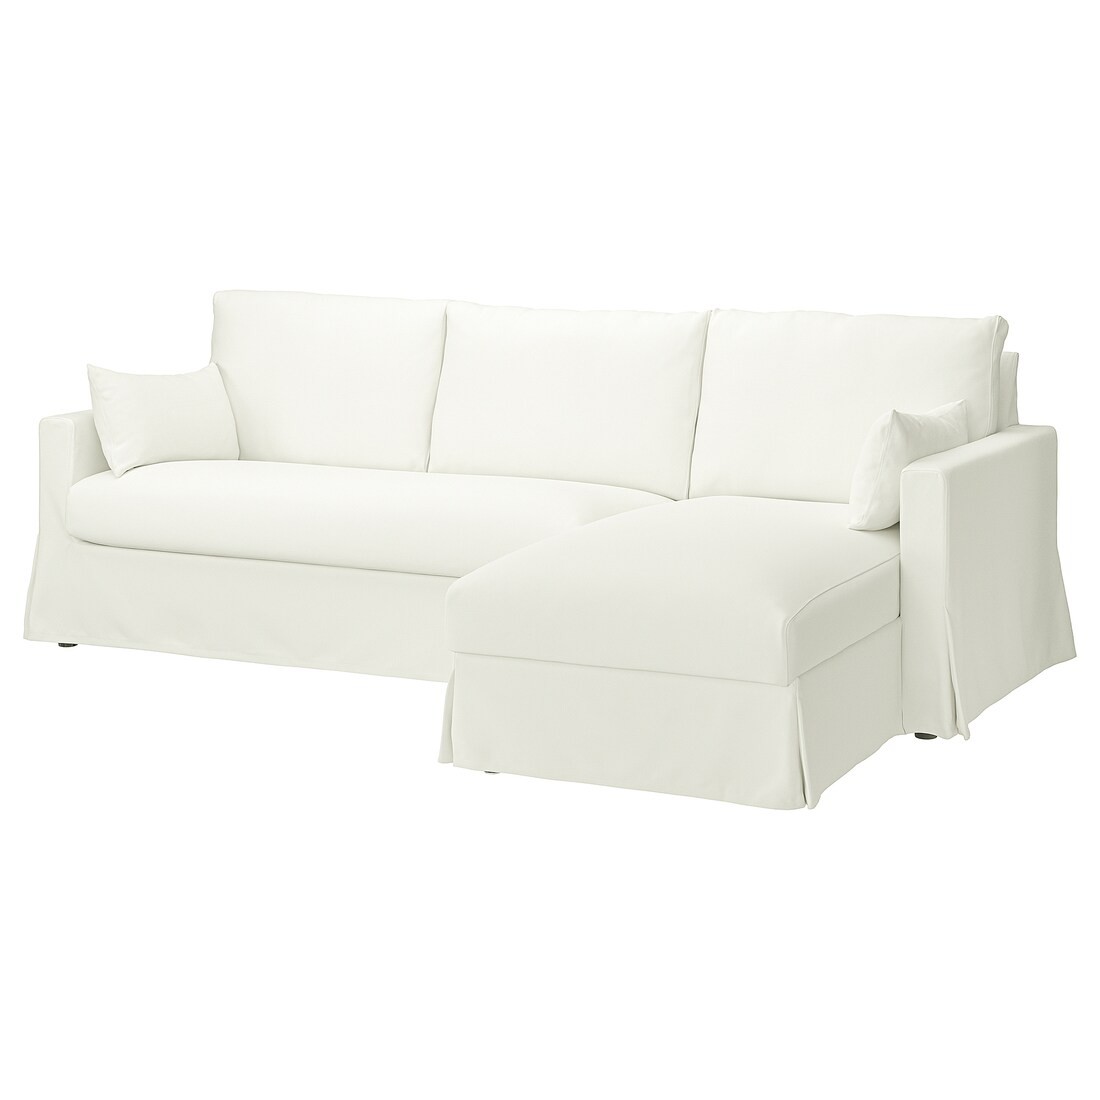 HYLTARP 3-місний диван з козеткою, правосторонній, Халларп білий